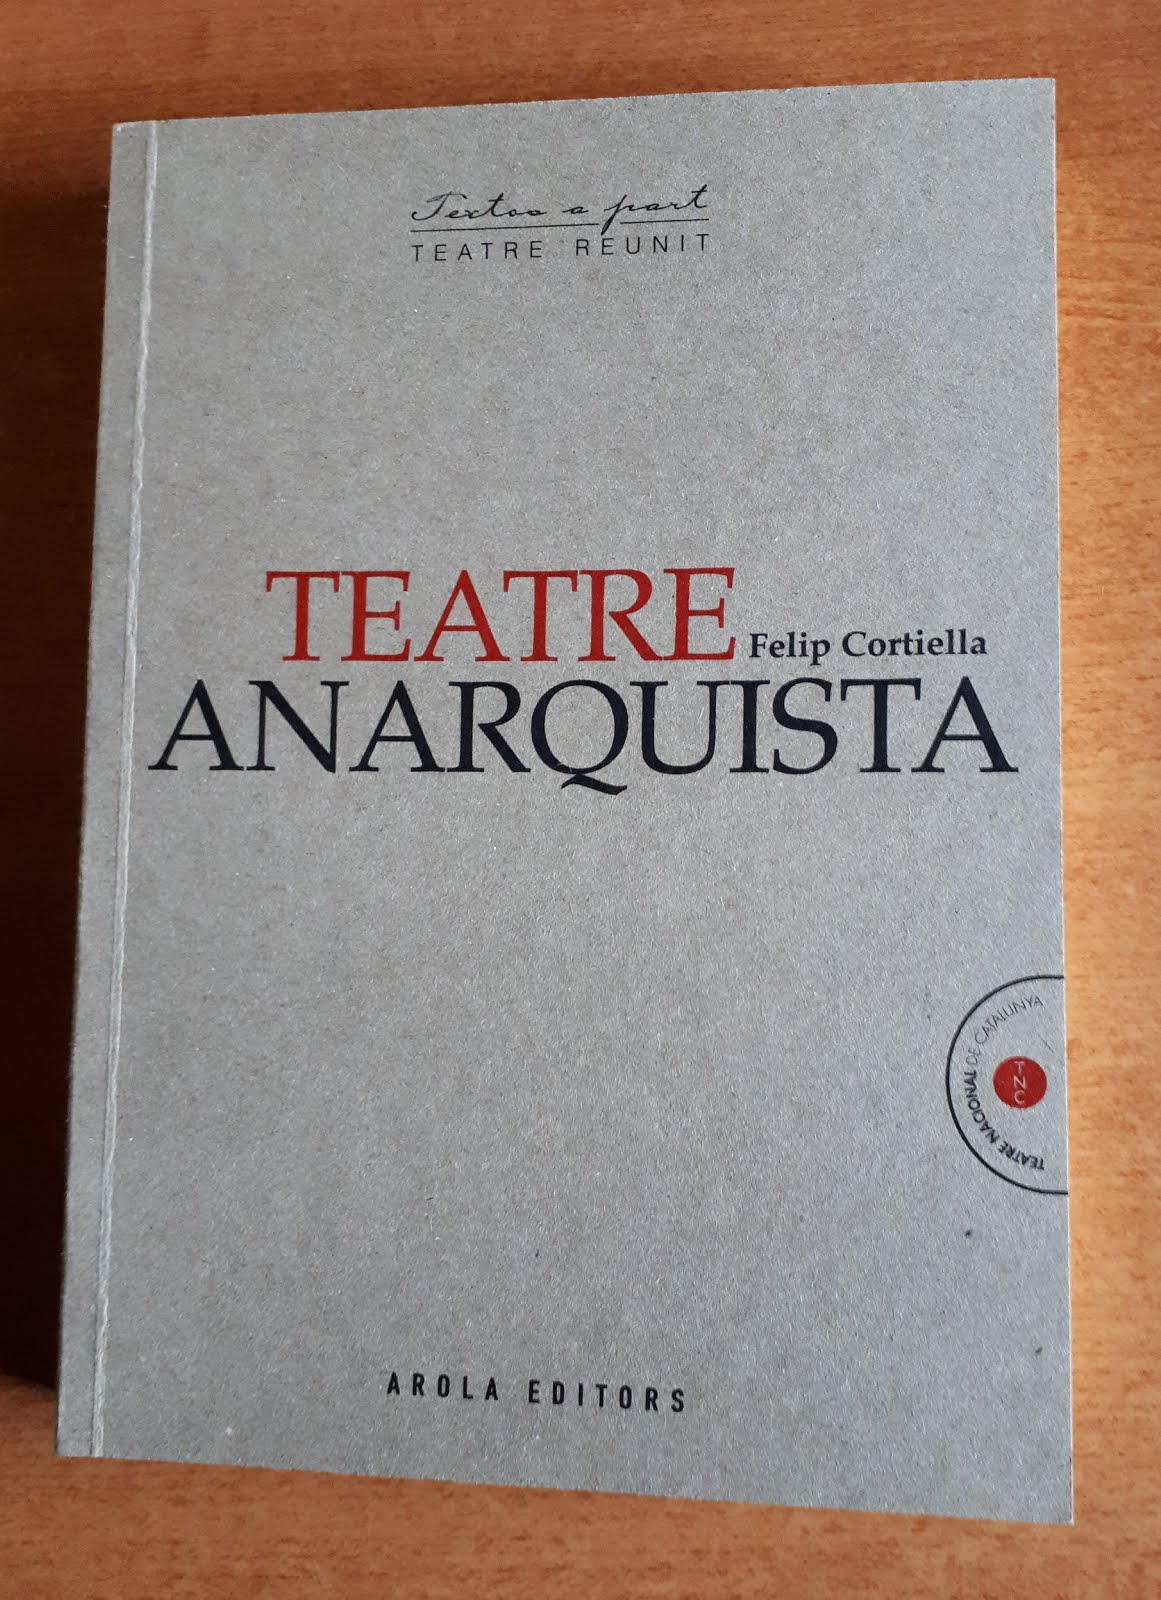 PRÓLOGO del libro: "Teatre Anarquista. Felip Cortiella".